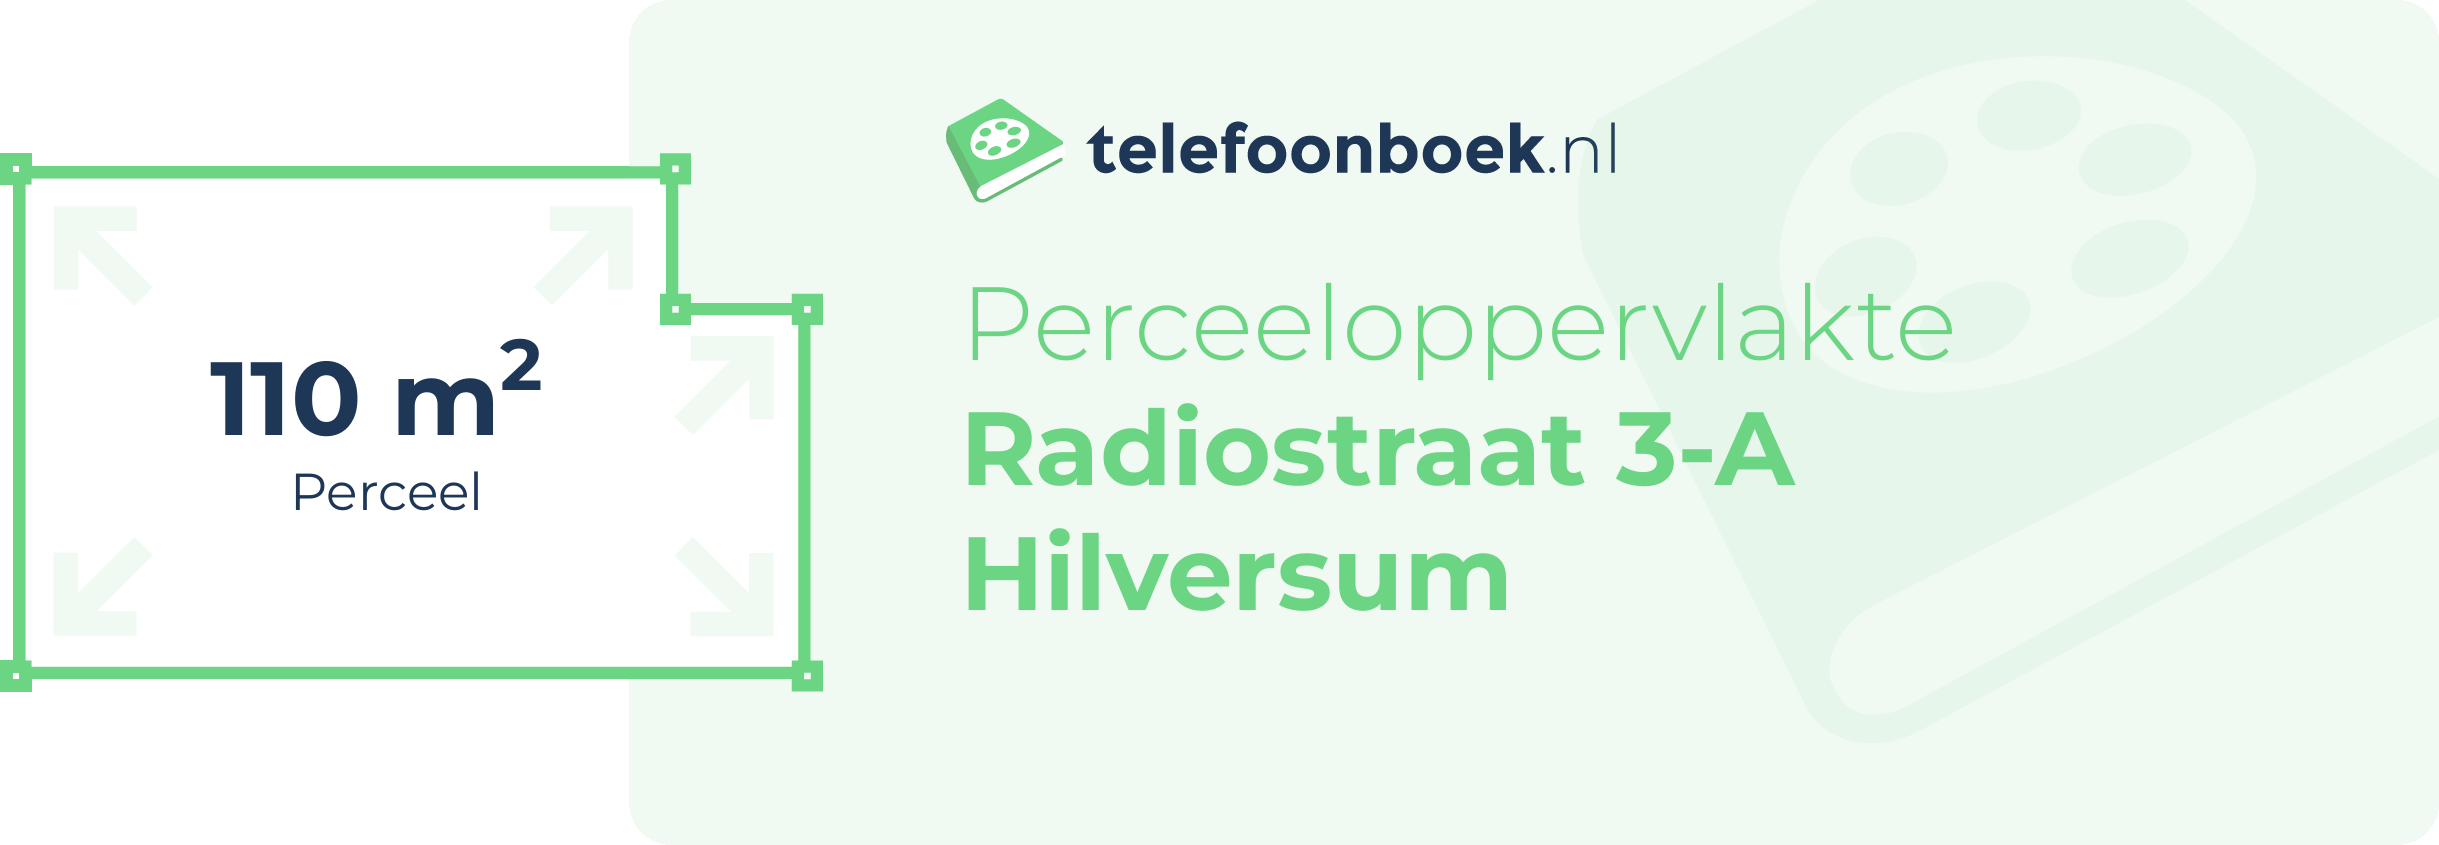 Perceeloppervlakte Radiostraat 3-A Hilversum